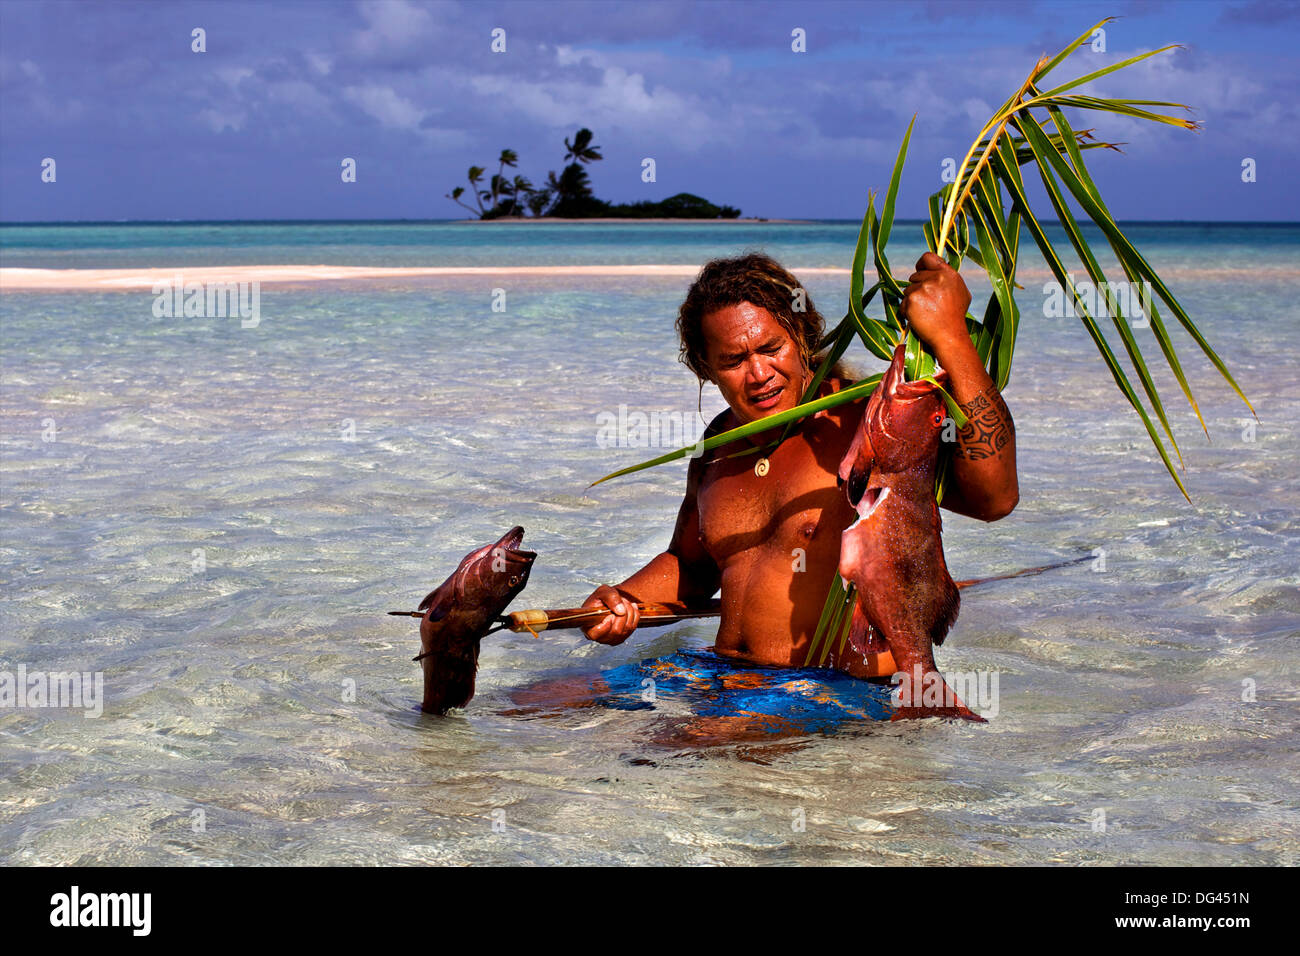 La pêche au moyen d'un harpon, au sable blanc, col, Fakarava Tetamanu Island, archipel des Tuamotu, Polynésie Française Banque D'Images